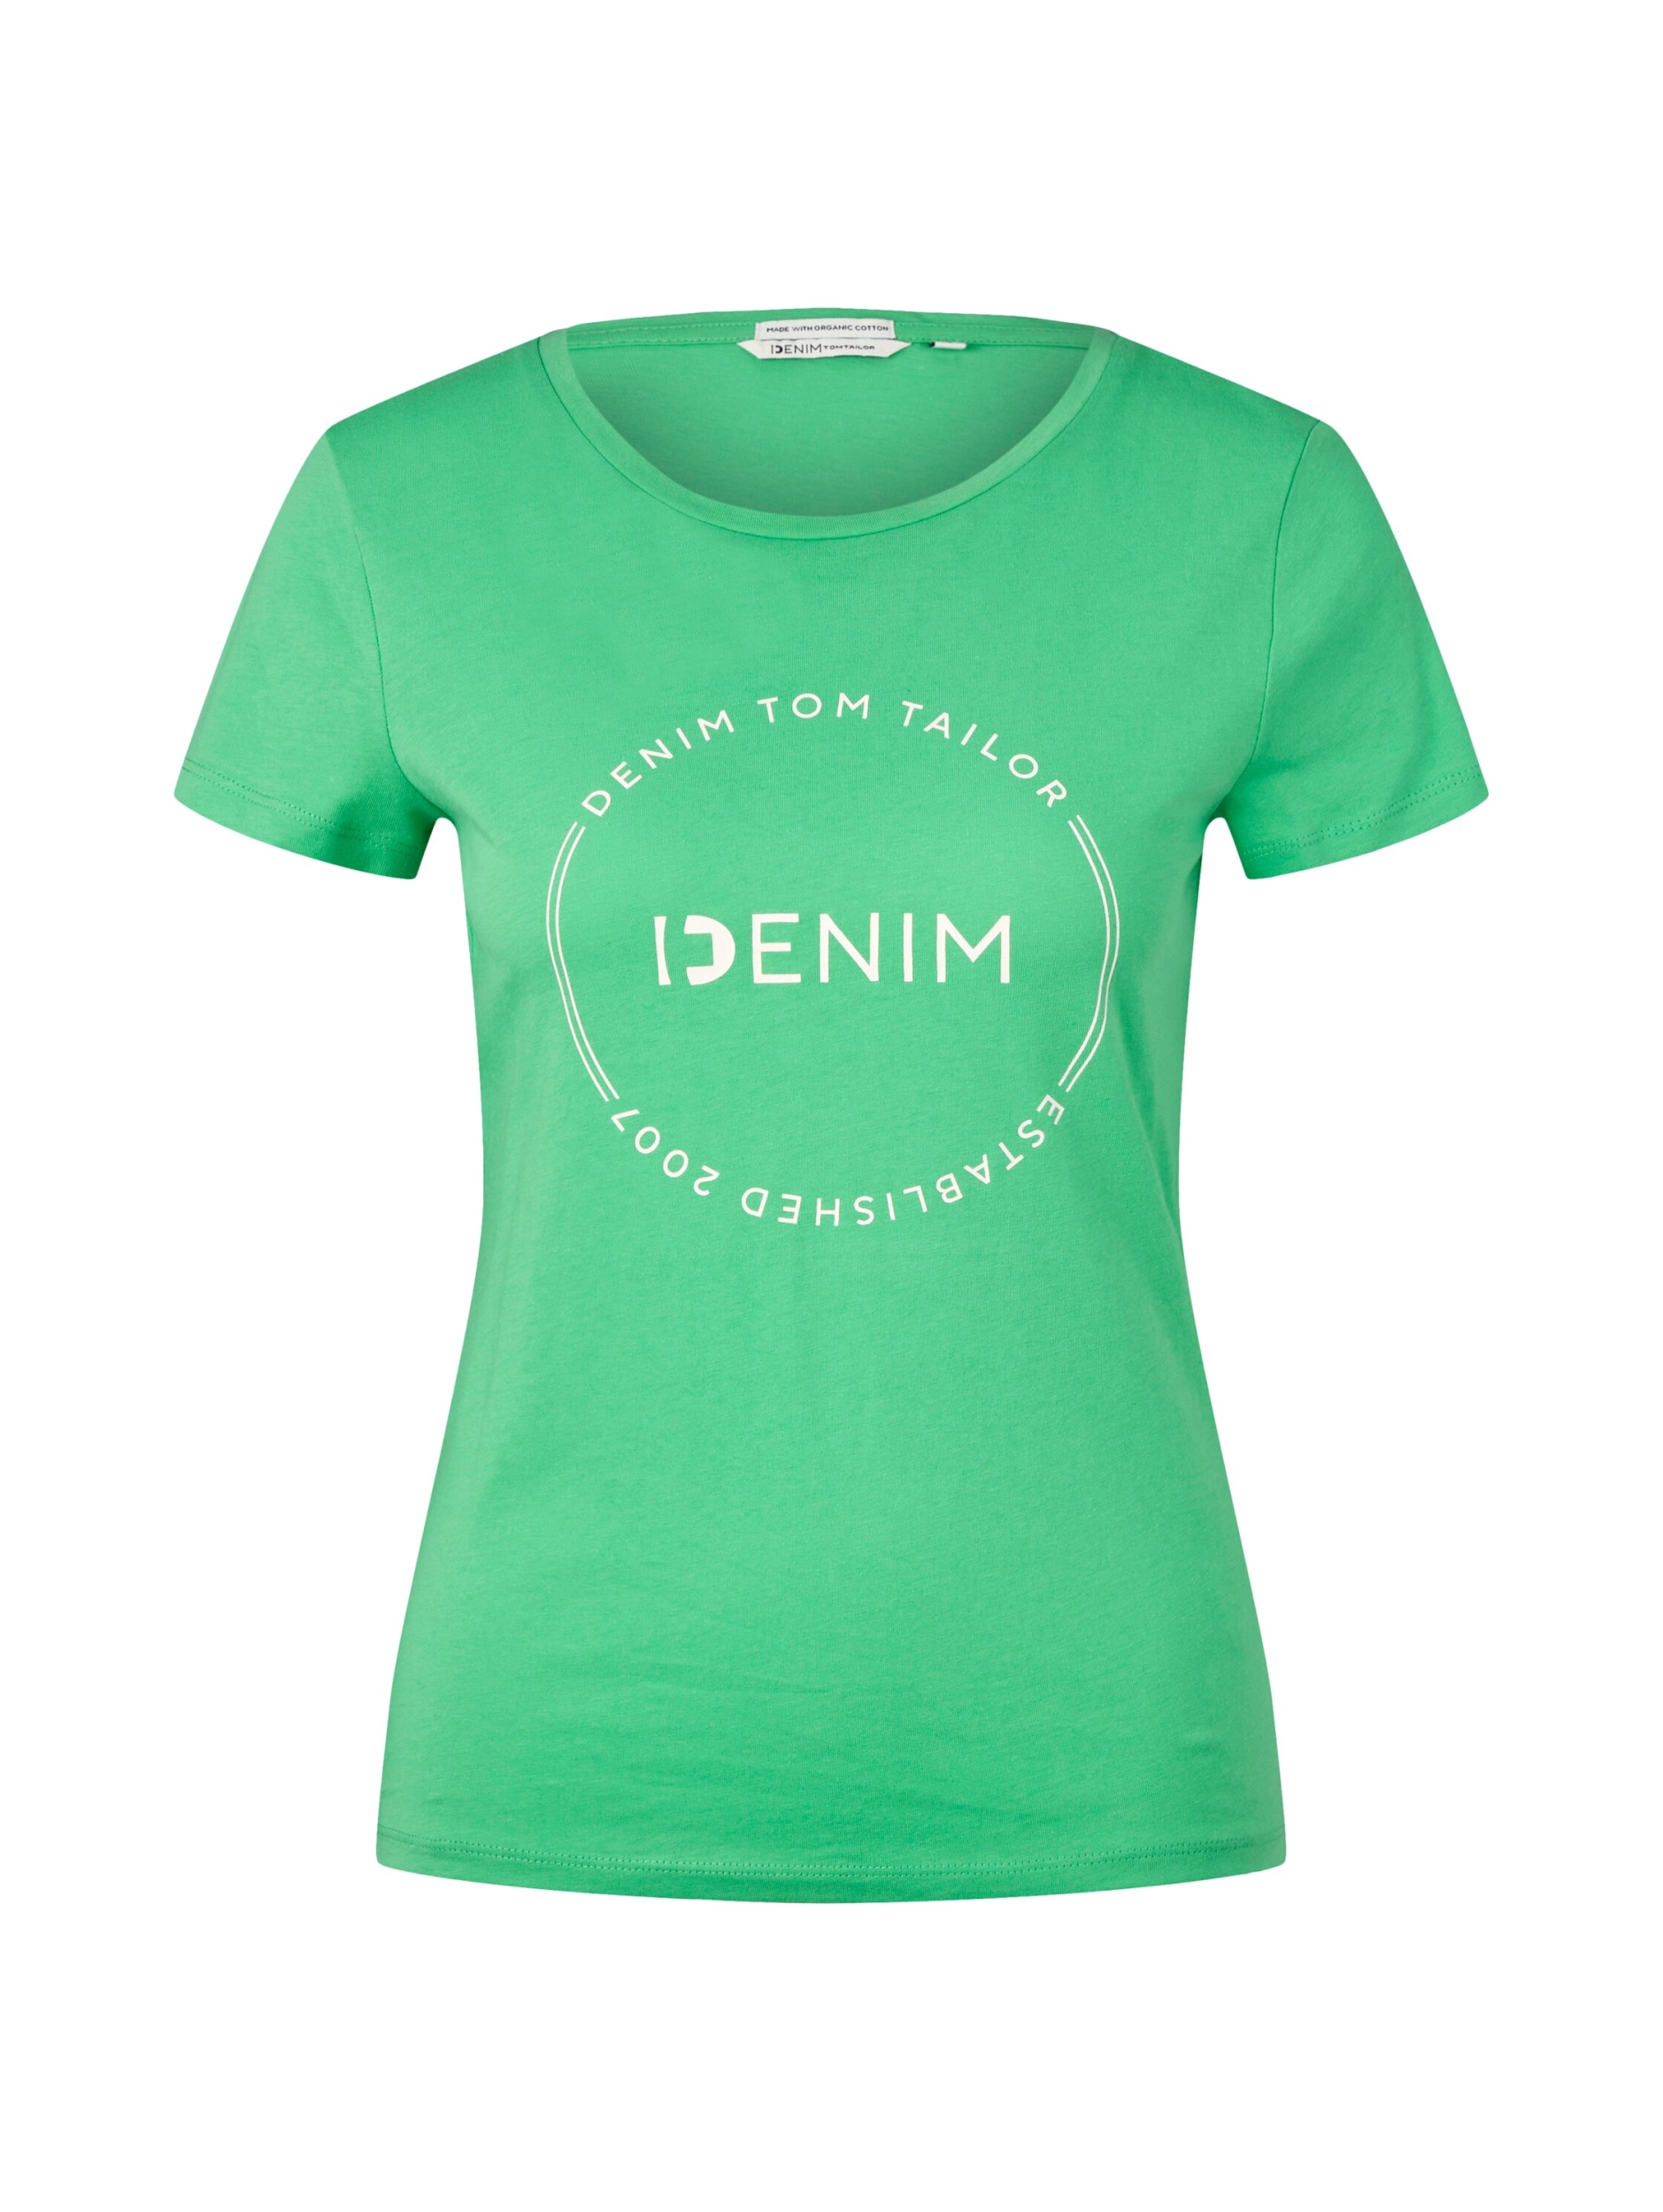 Mode online shoppen T-Shirts Damen MITTERMAYR für |